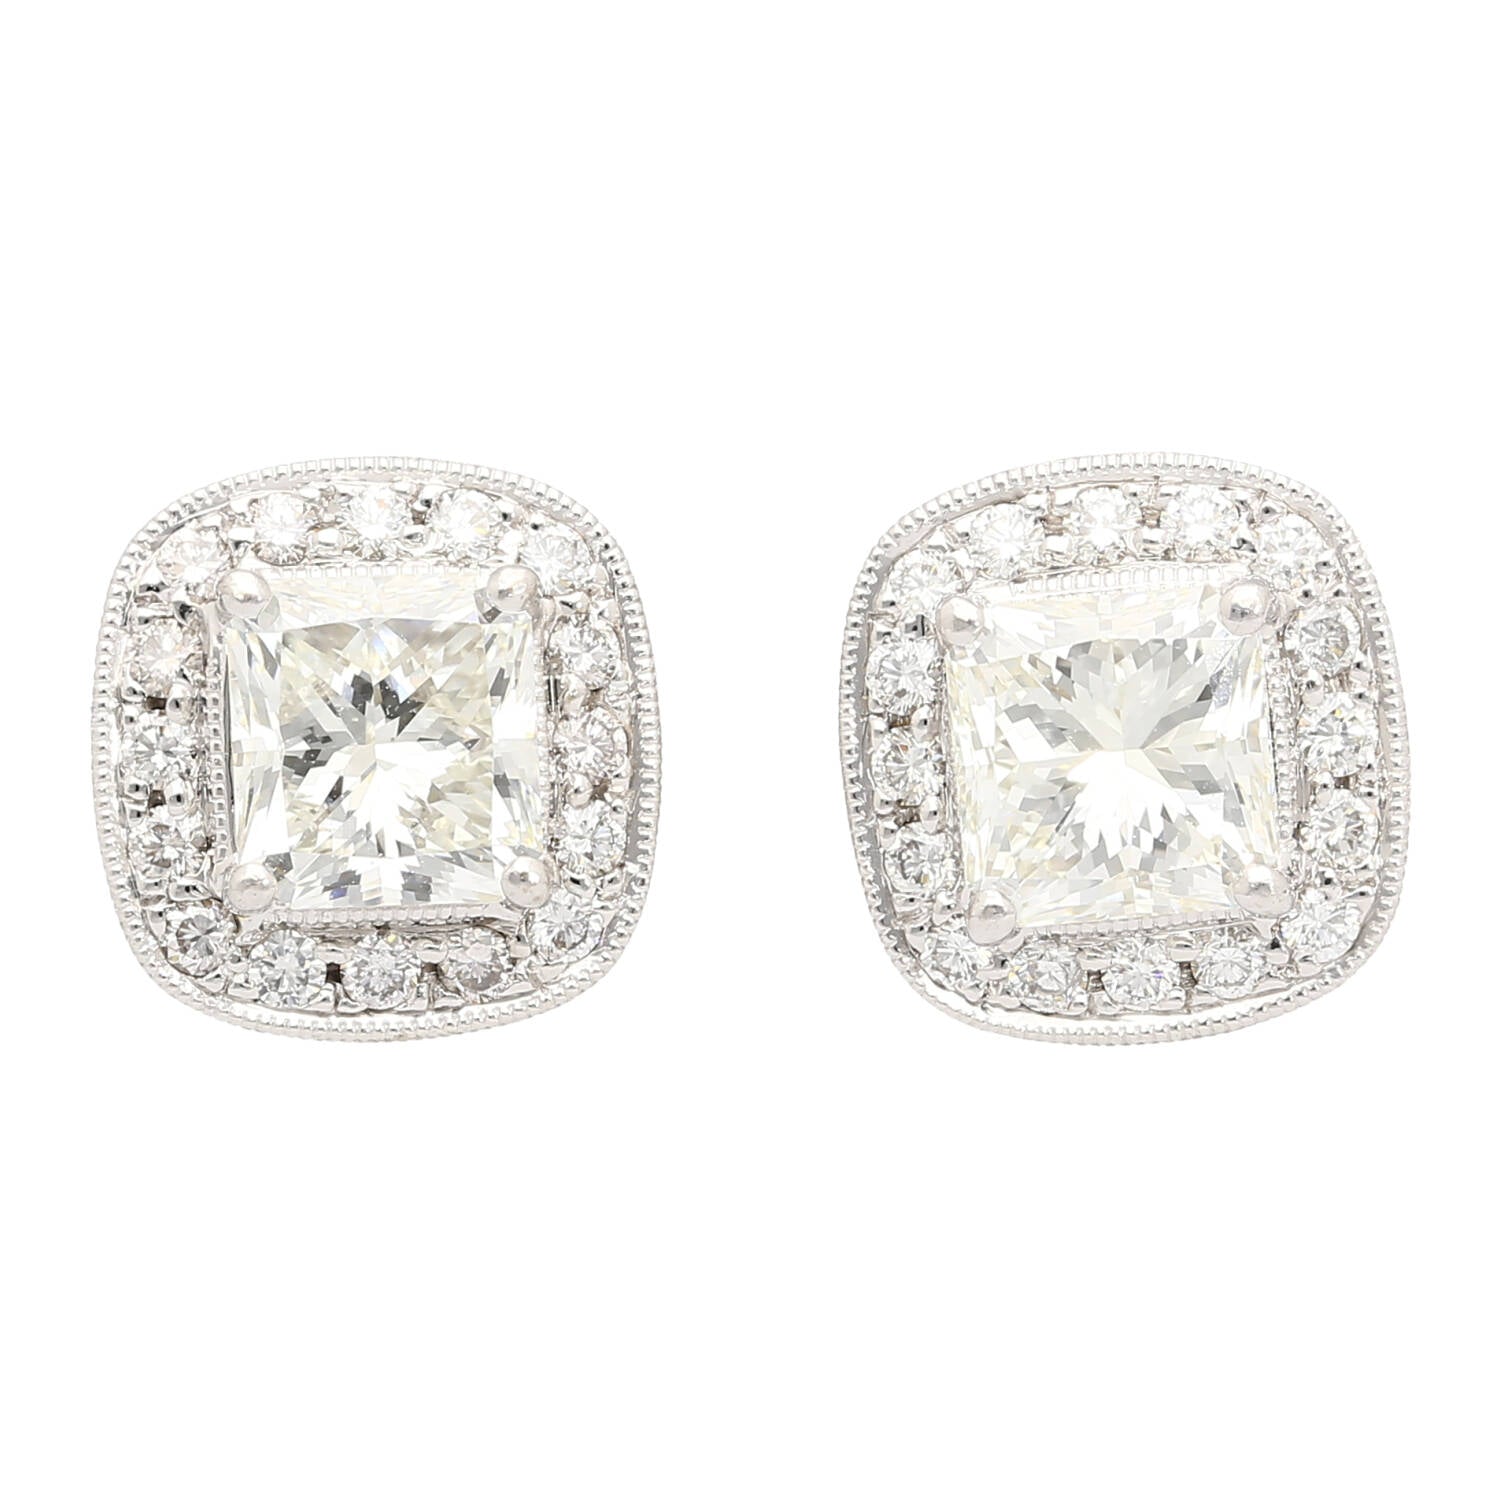 GIA Certified 3 Carat Total Radiant Cut Diamond Stud Earrings in 18K White Gold-Earrings-ASSAY